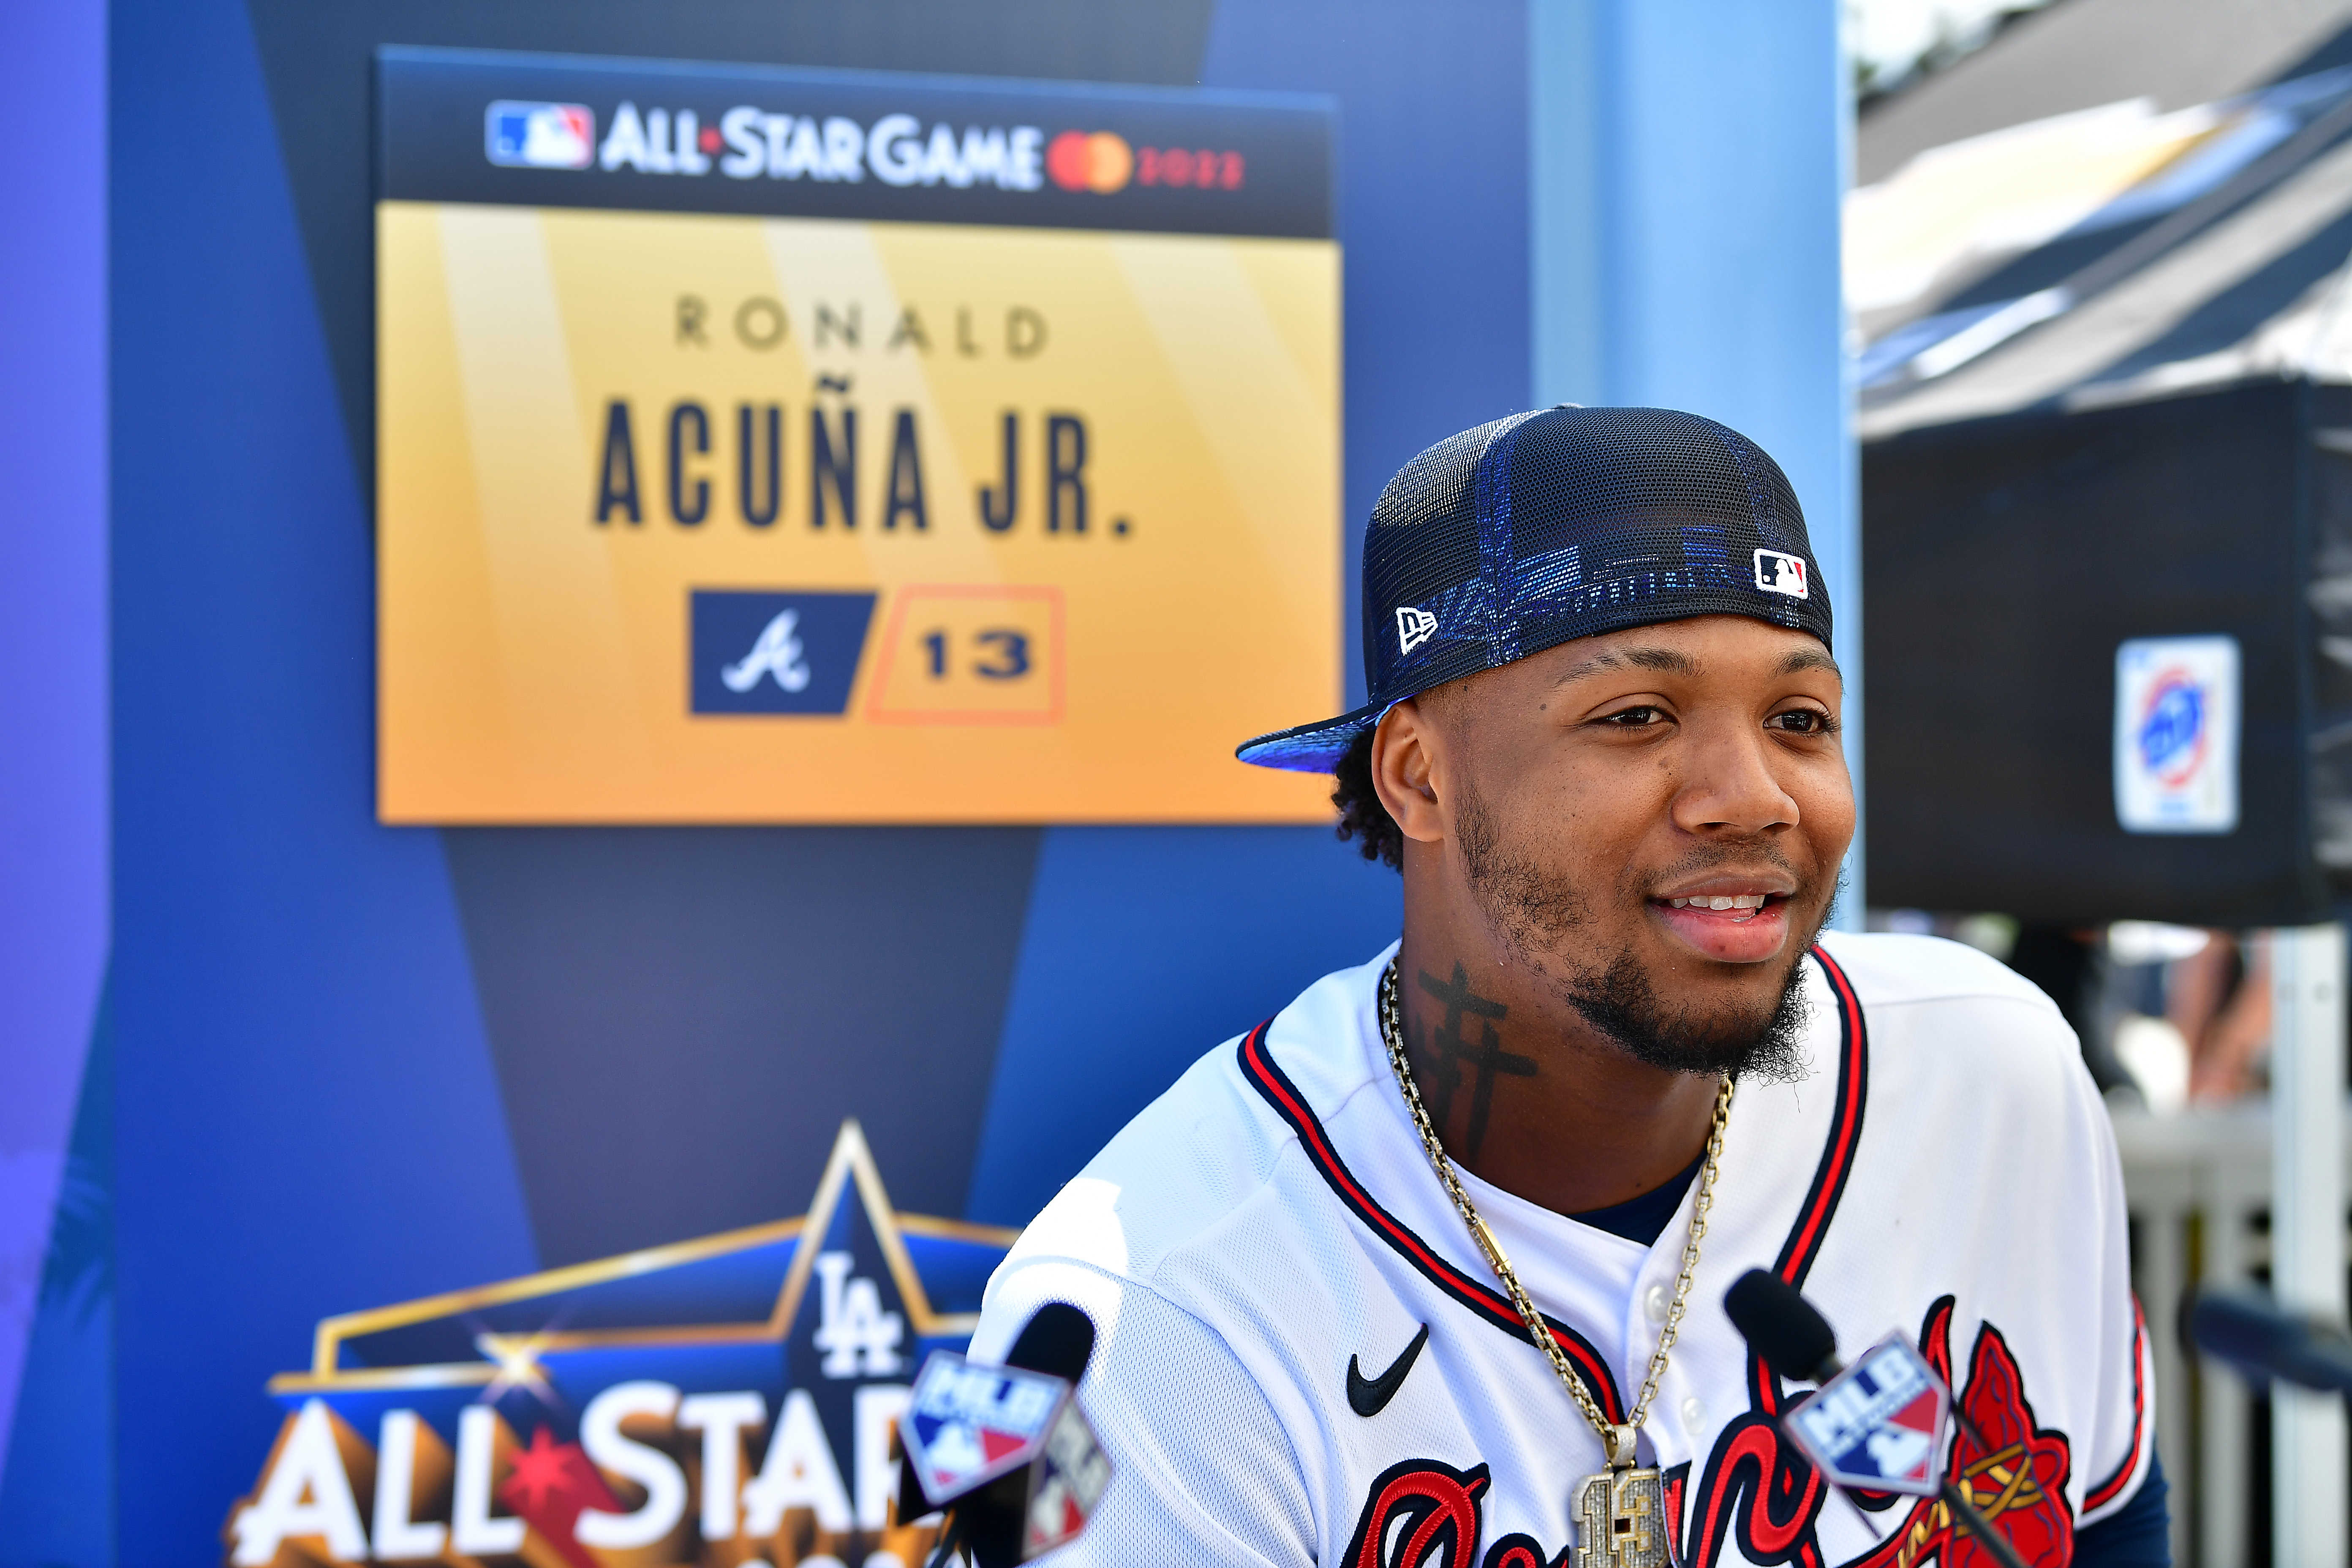 Ronald Acuna Jr. 2022 Major League Baseball All-Star Game